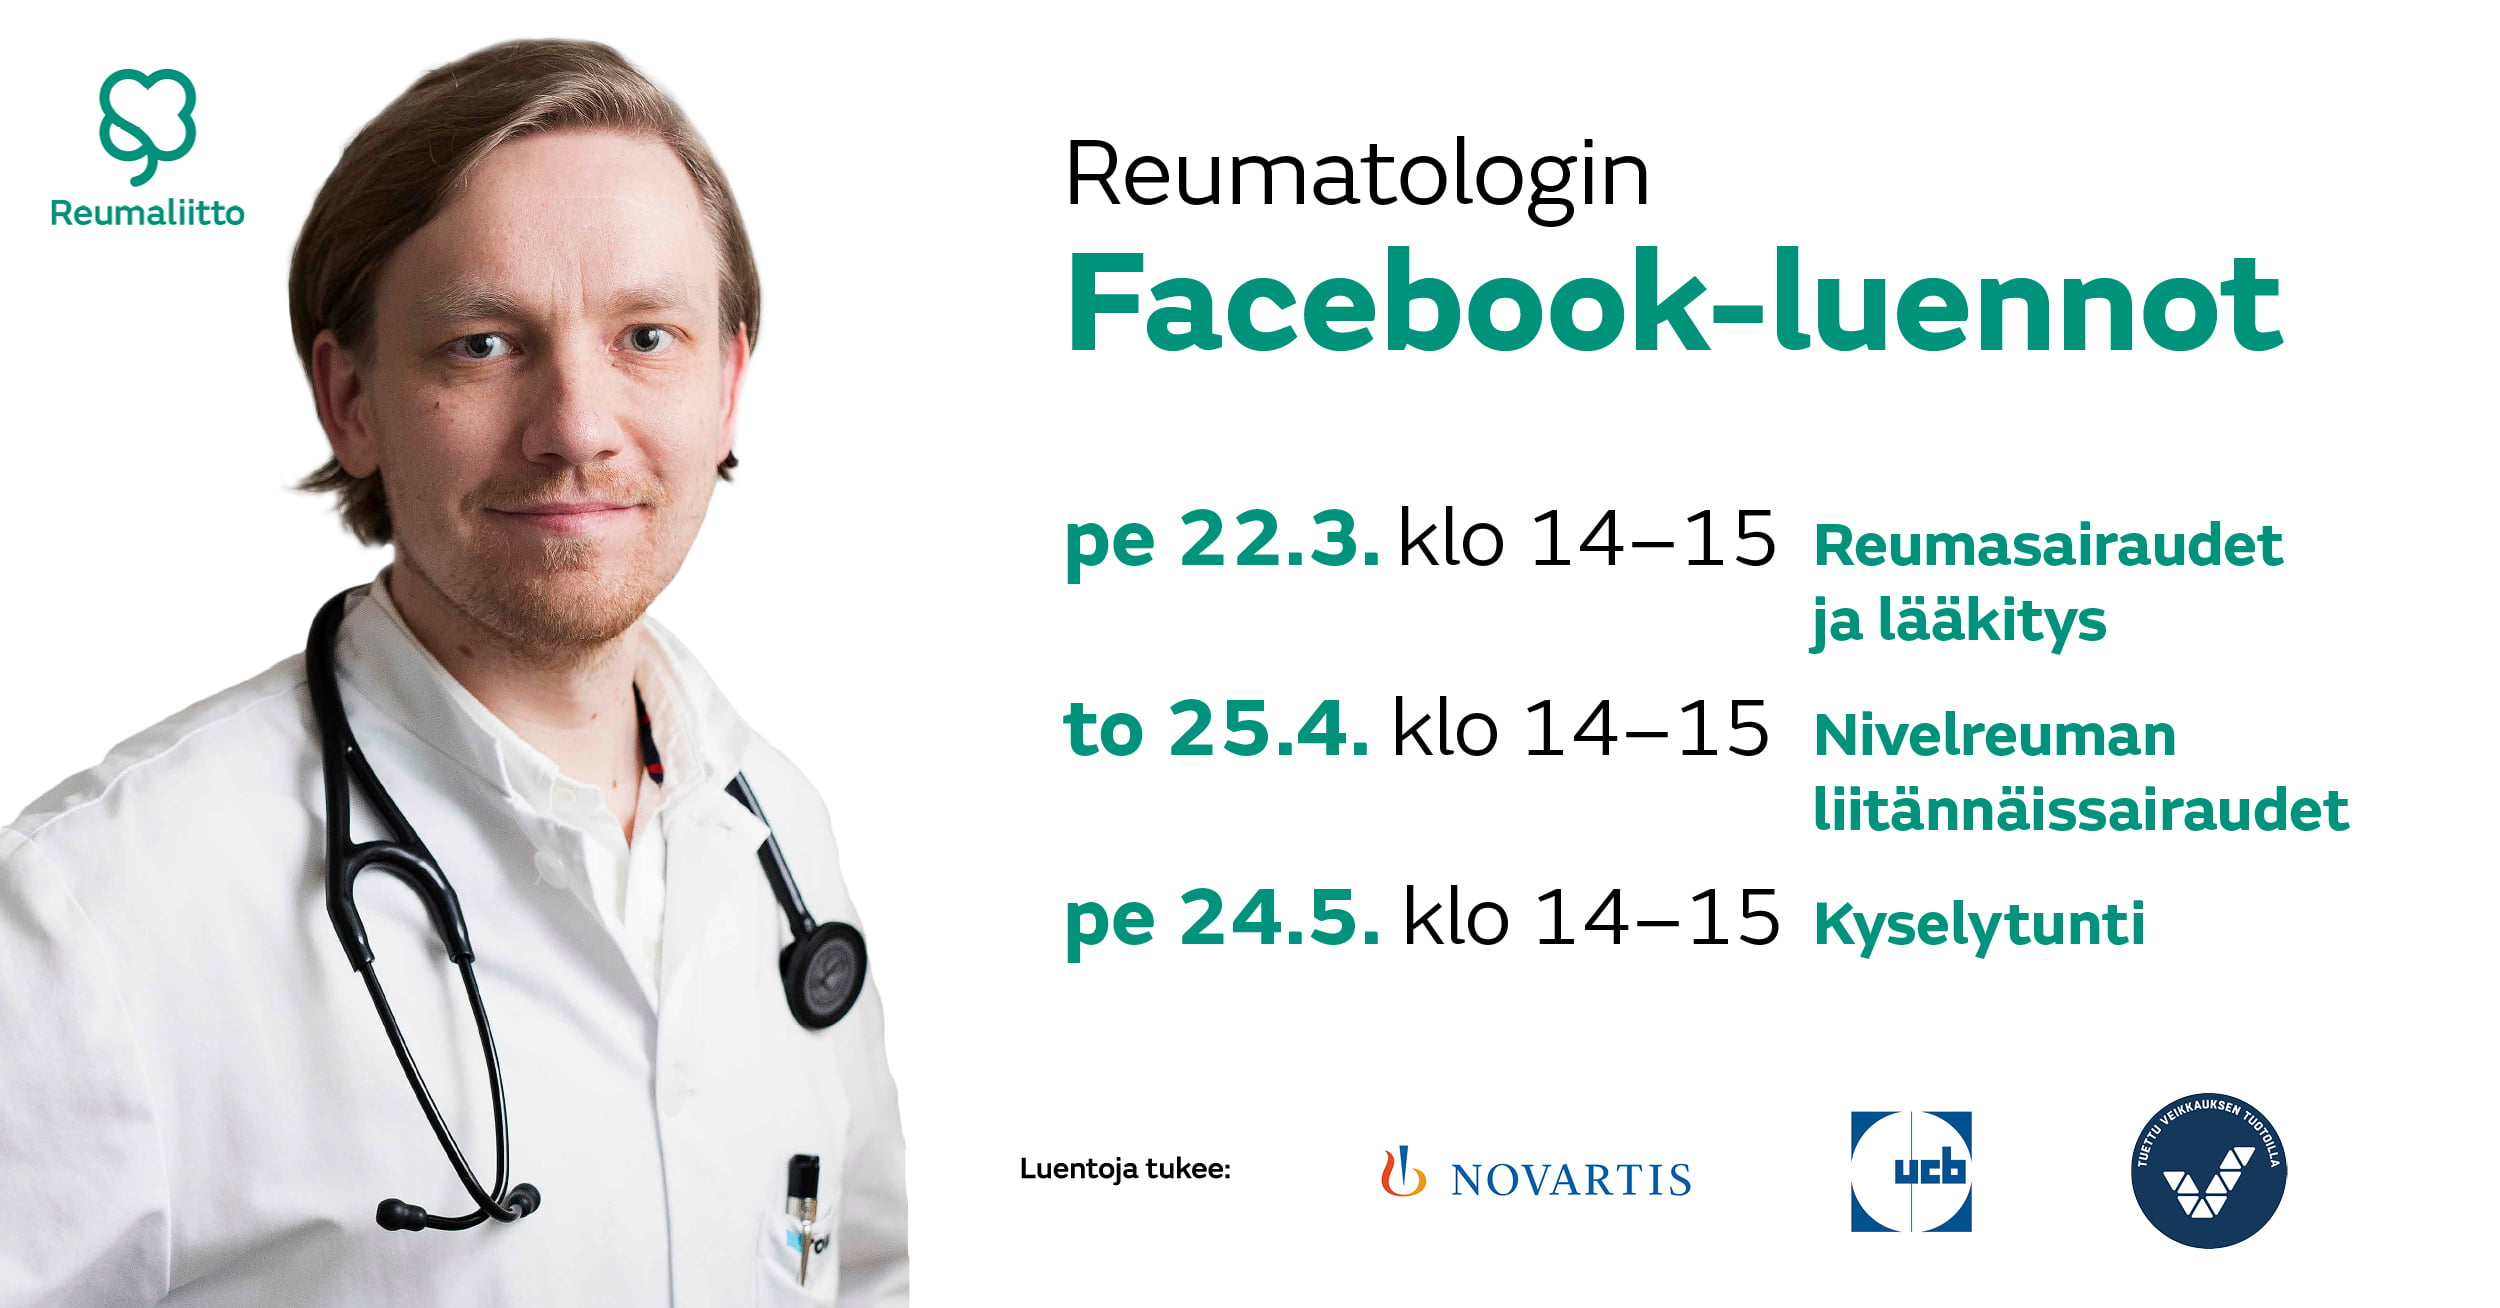 Reumatologin Facebook-luennot: Pe 22.3 klo 14-15, pe 25.4 klo 14-15, pe 24.5 klo 14-15